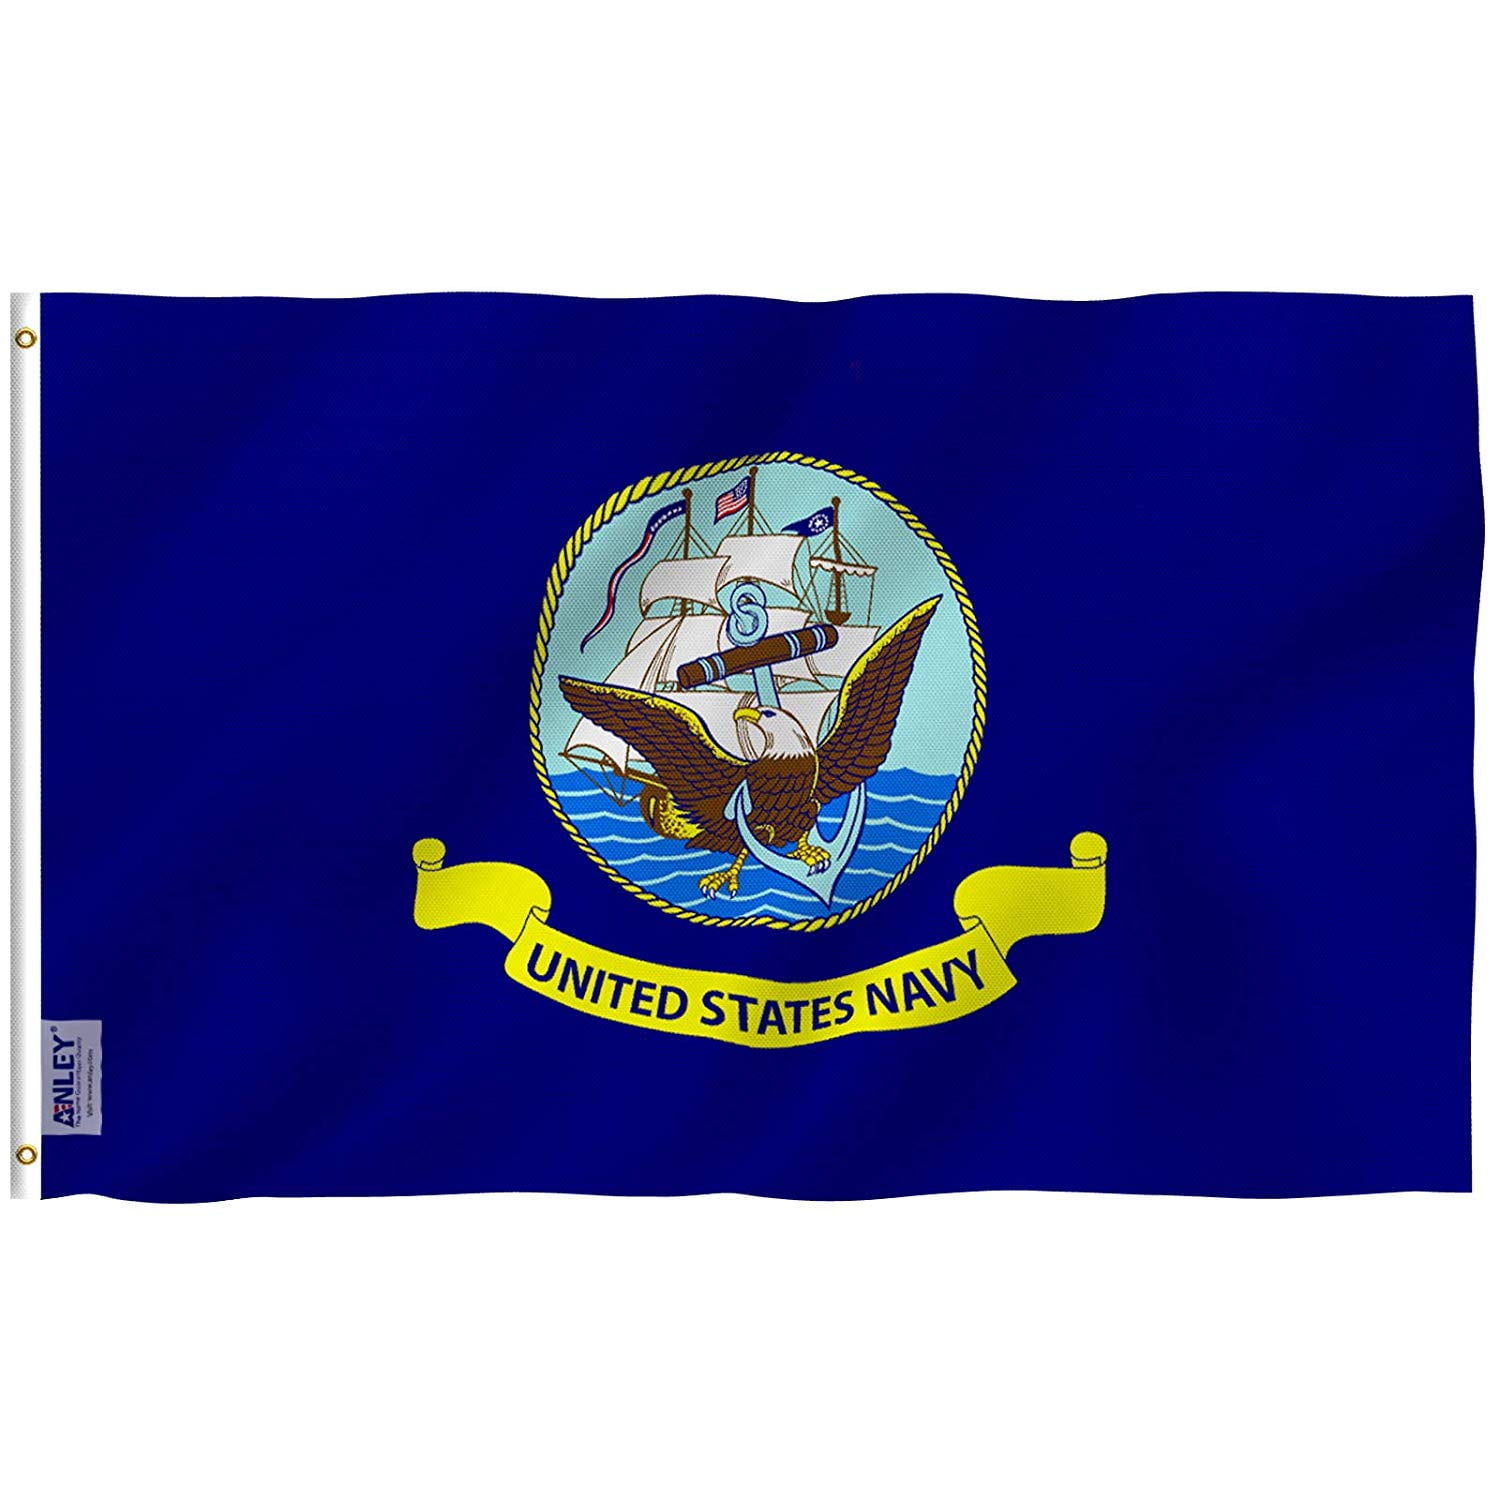 5 Branches Military Kansas Flag Set Wholesale Lot 2x3 USA Pow Mia 